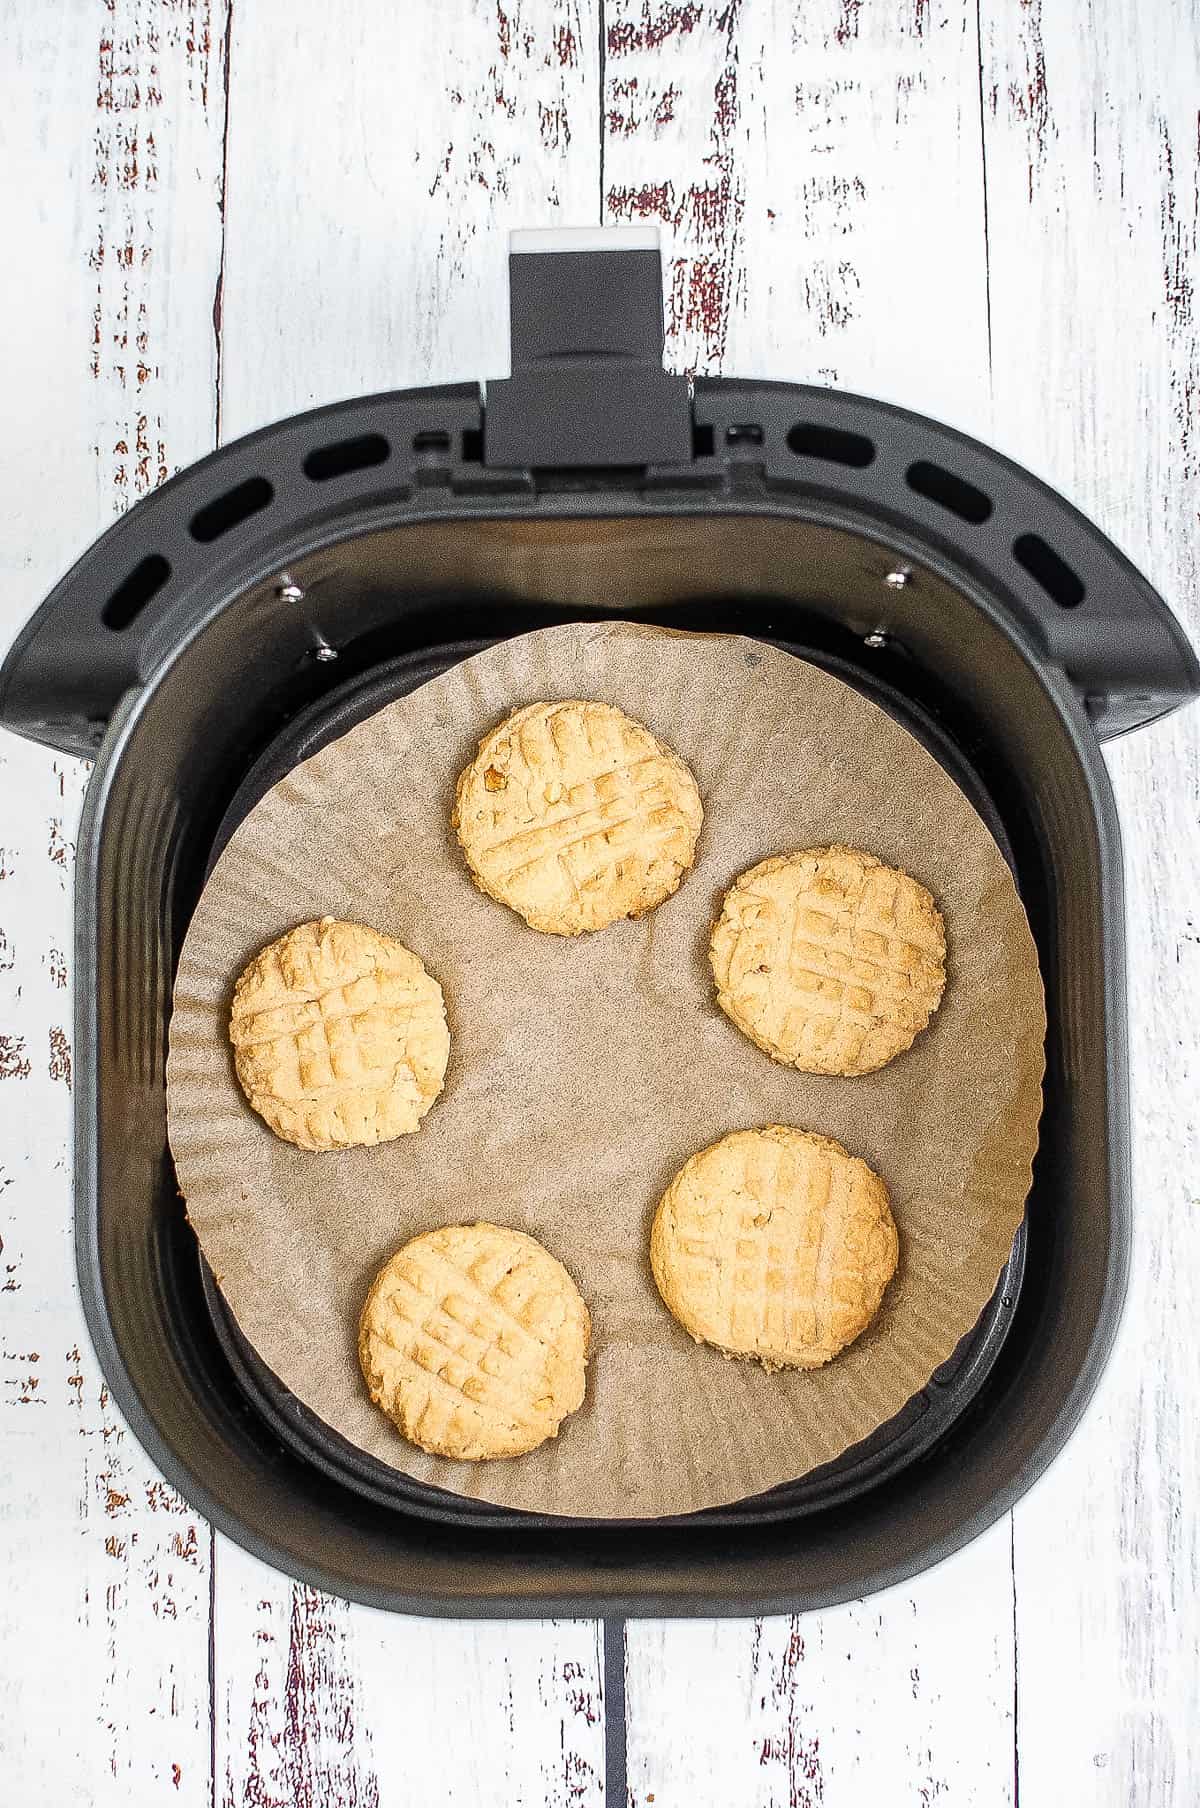 baked cookies in the air fryer basket.